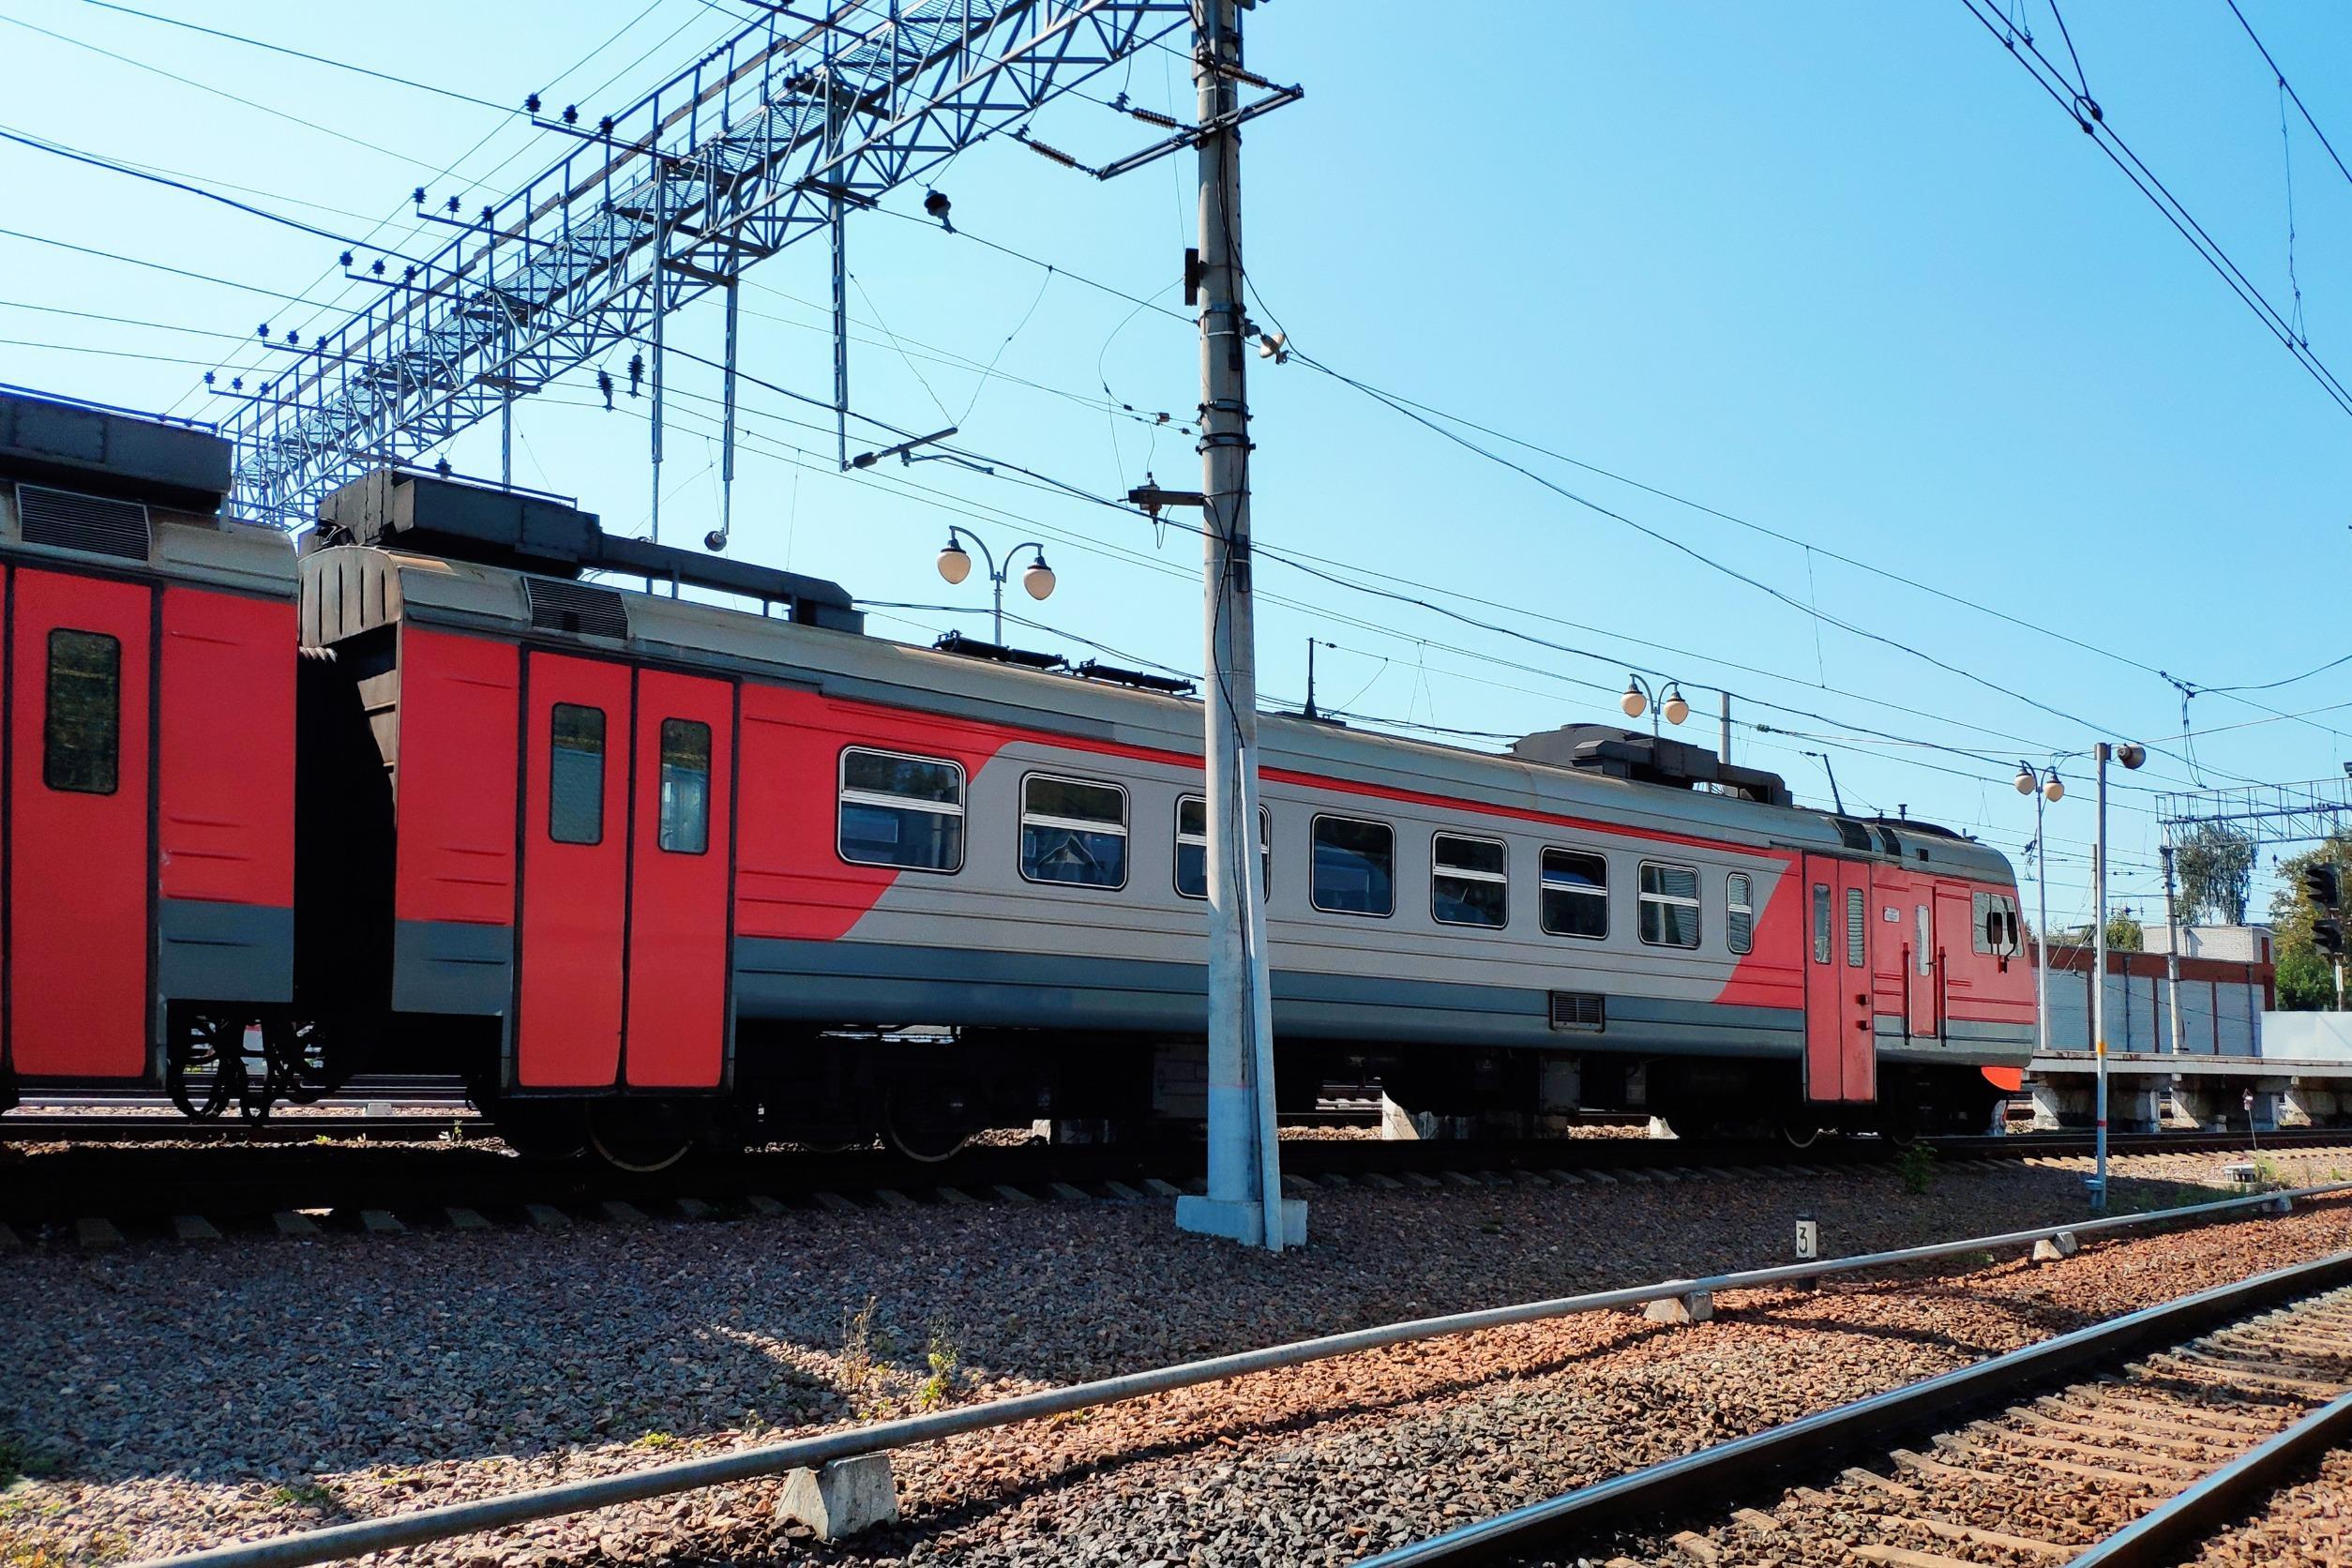 Sciopero treni 8 gennaio 2023 Emilia, Liguria e Marche: gli orari